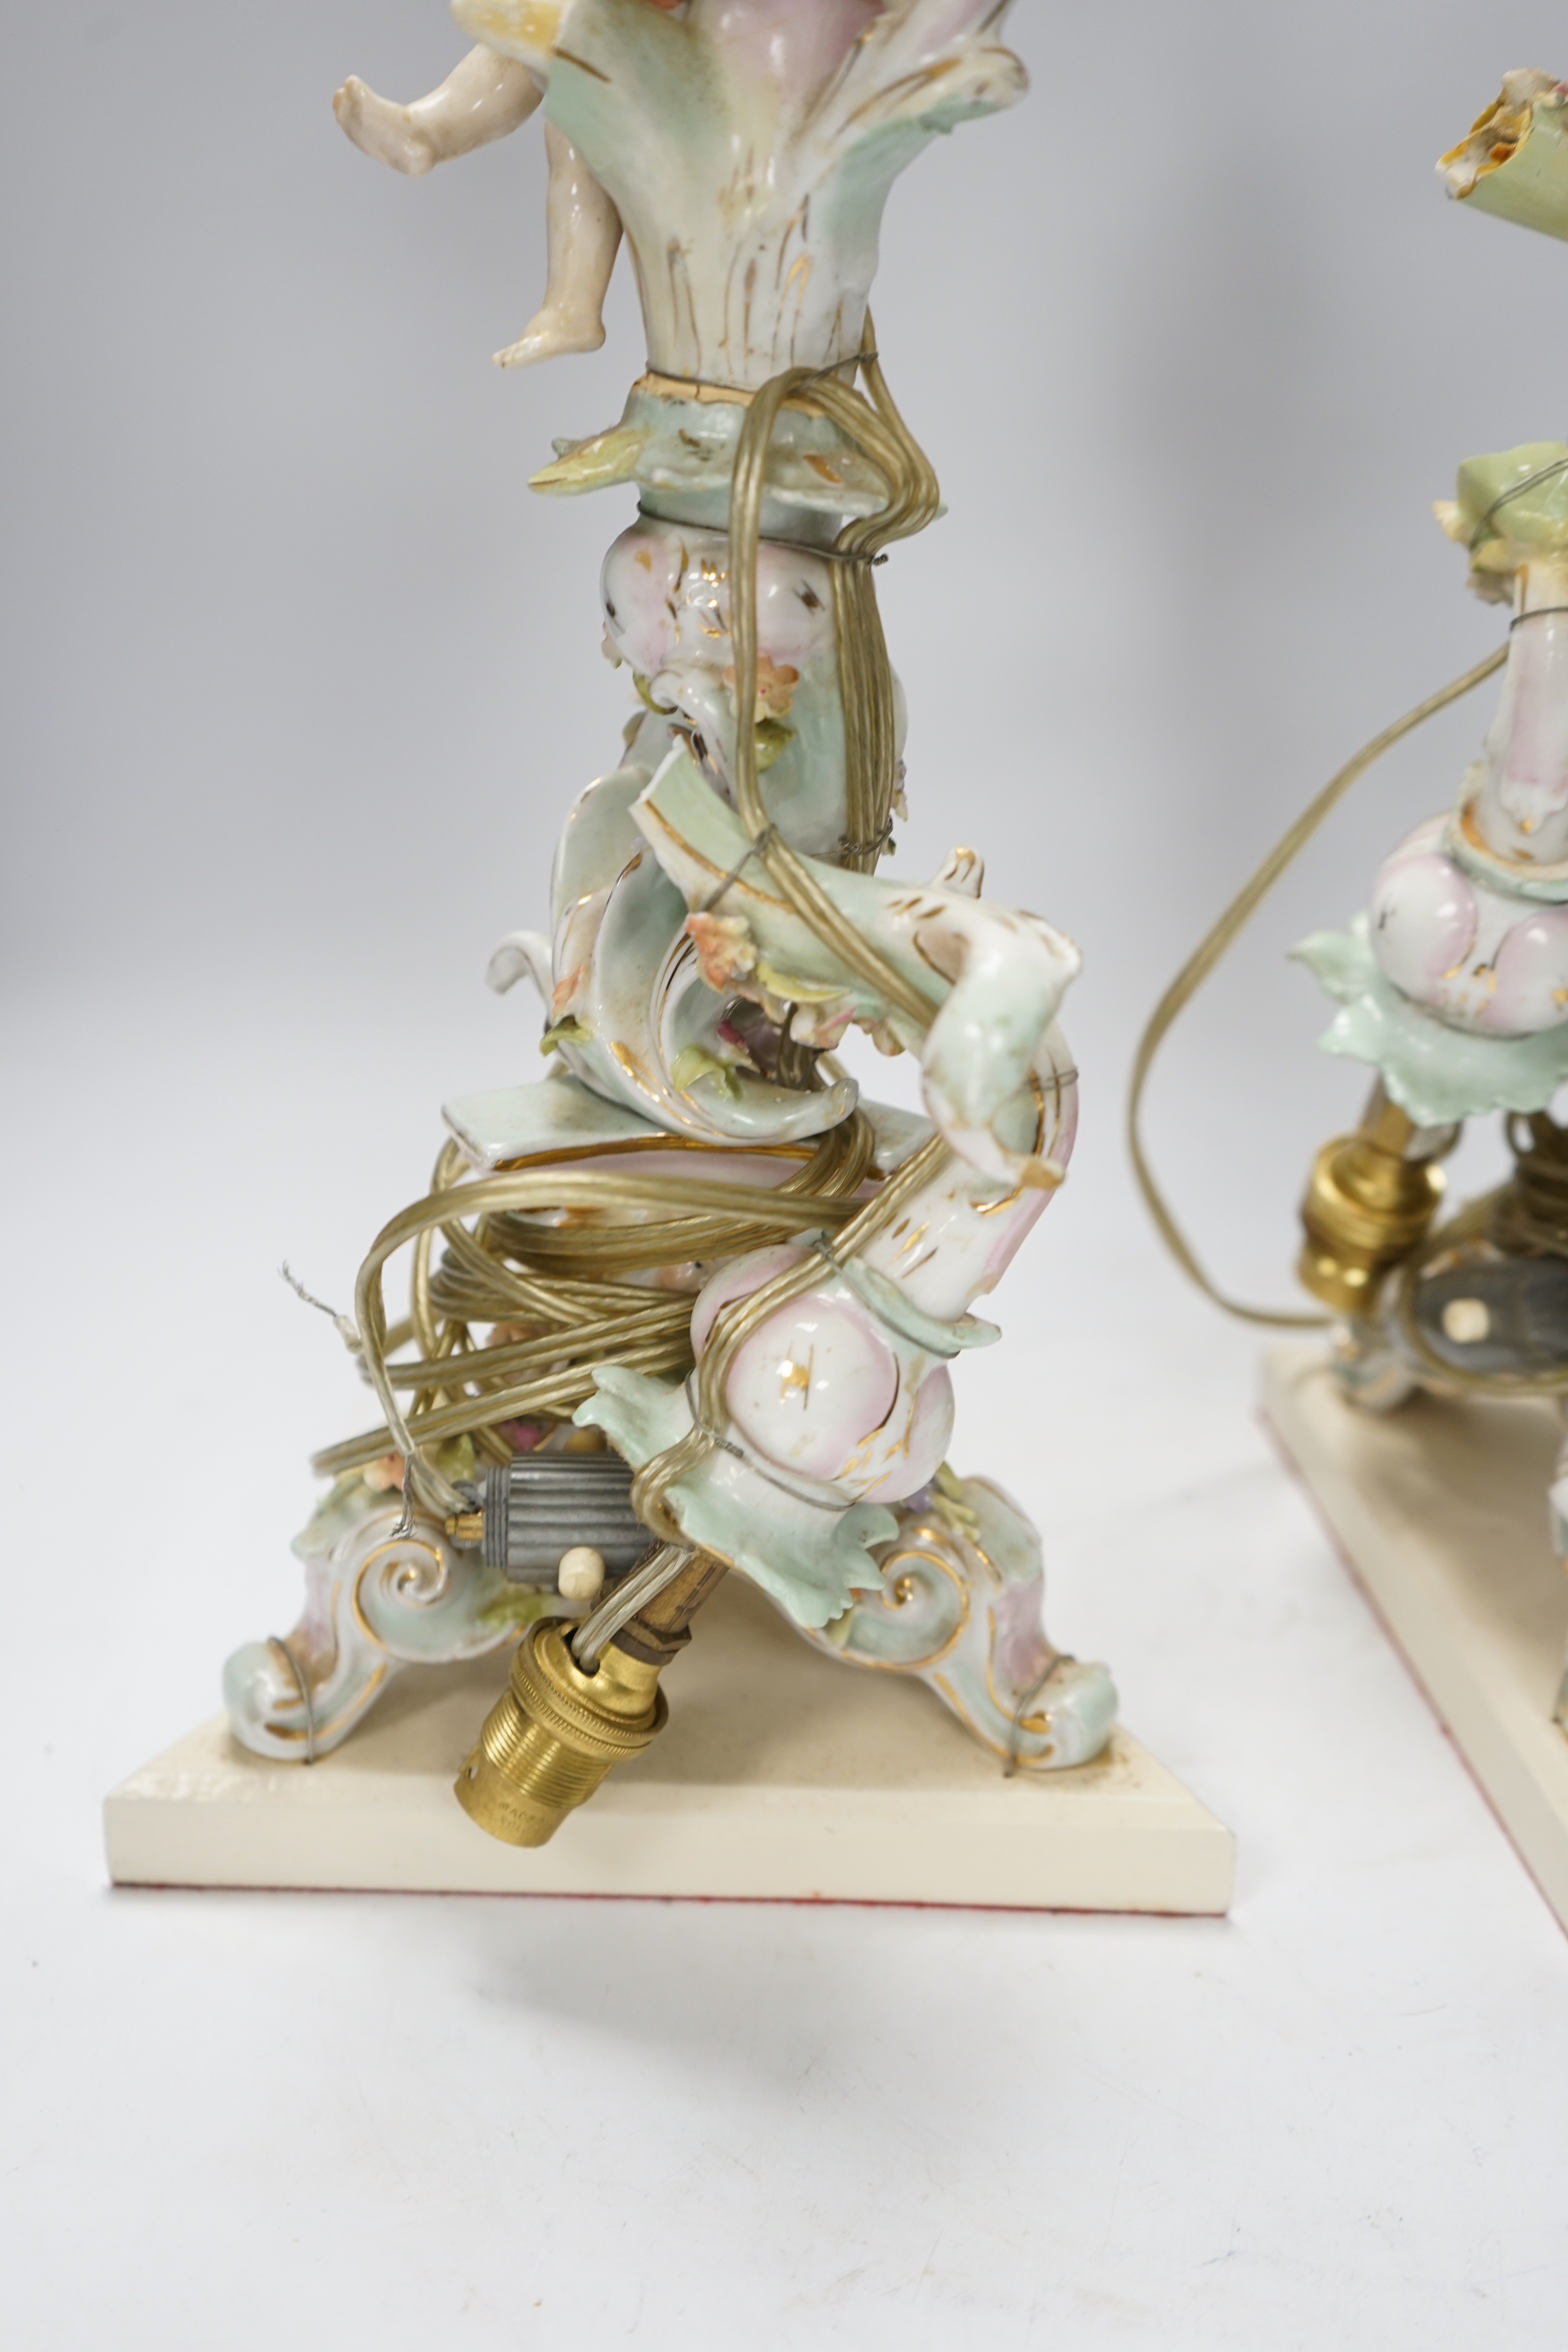 A pair of Sitzendorf floral encrusted porcelain table lamps, 42cm total